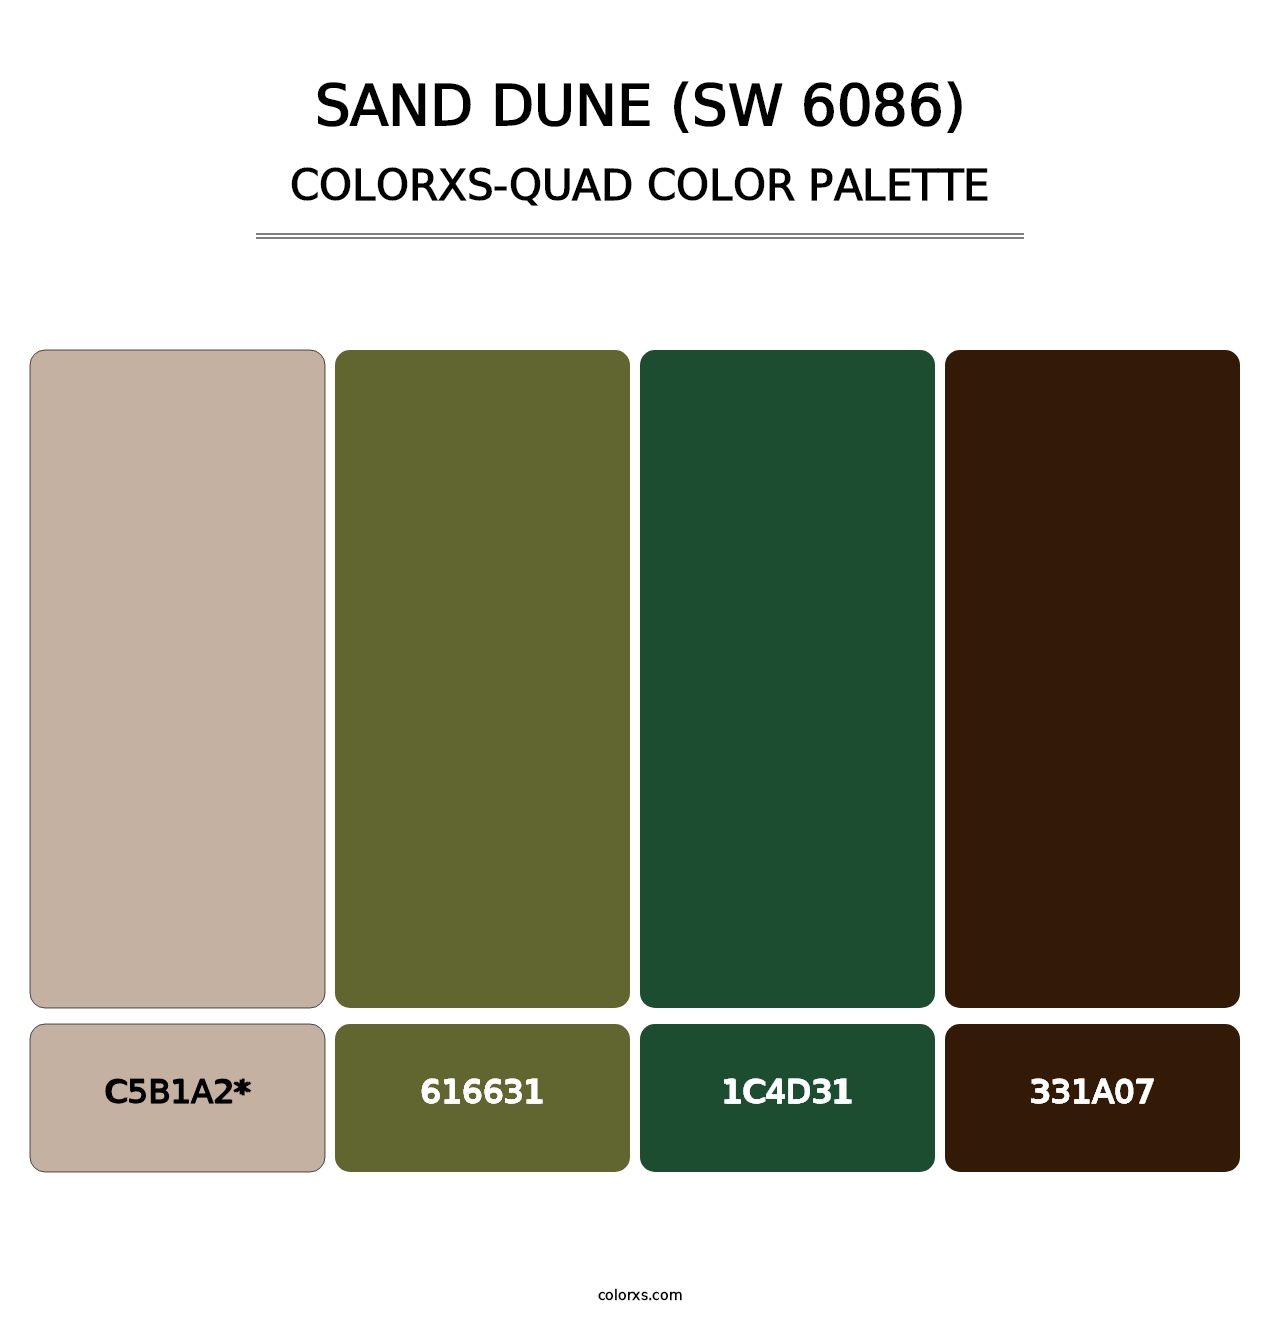 Sand Dune (SW 6086) - Colorxs Quad Palette